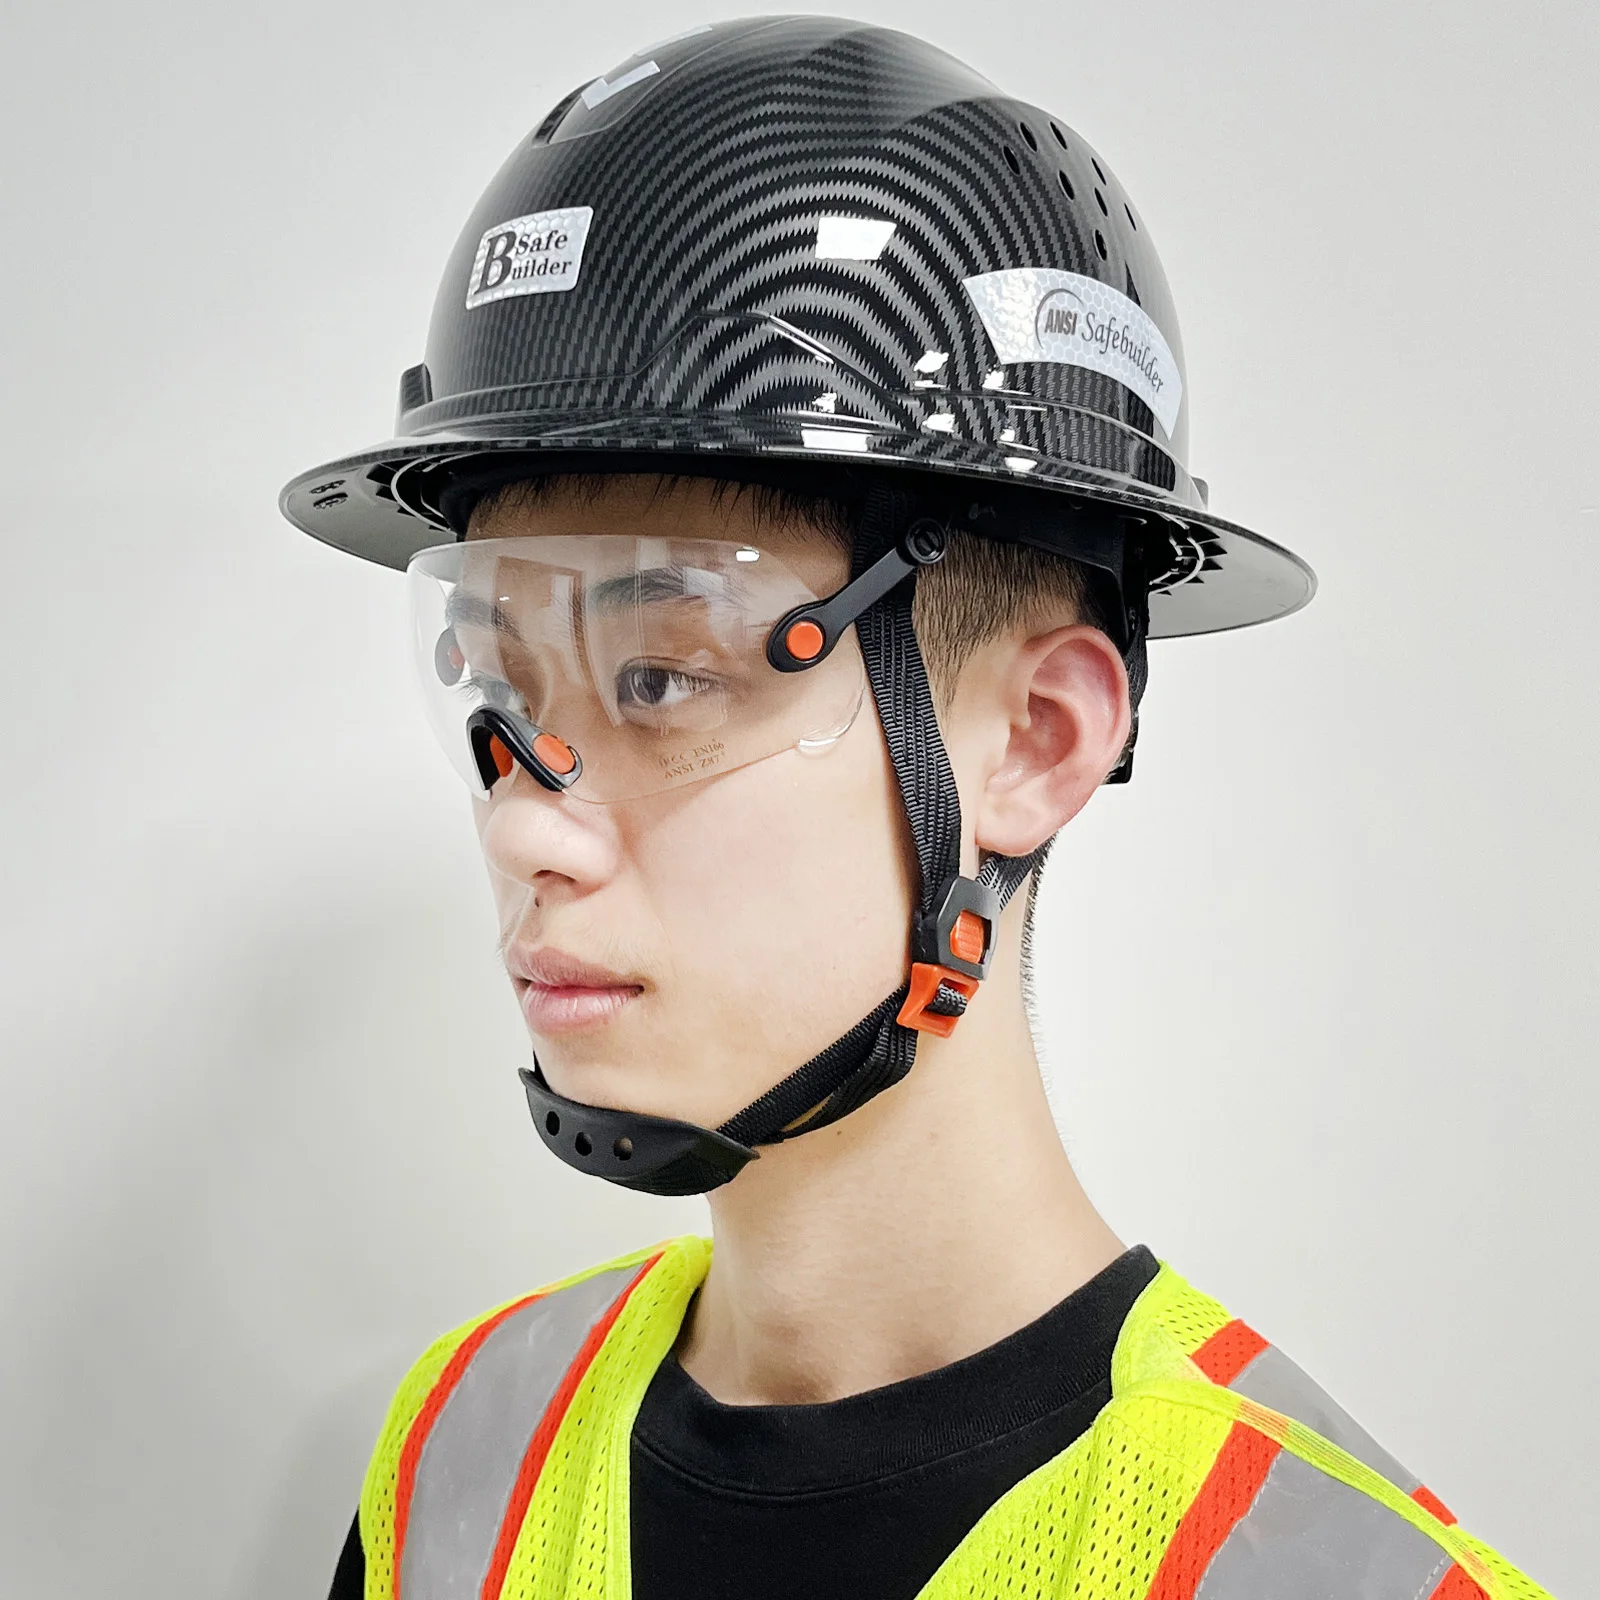 Full Brim Hard Hat With Visor For Engineer Construction Work Cap For Men  ANSI Approved HDPE Safety Helmet Carbon Fiber Color